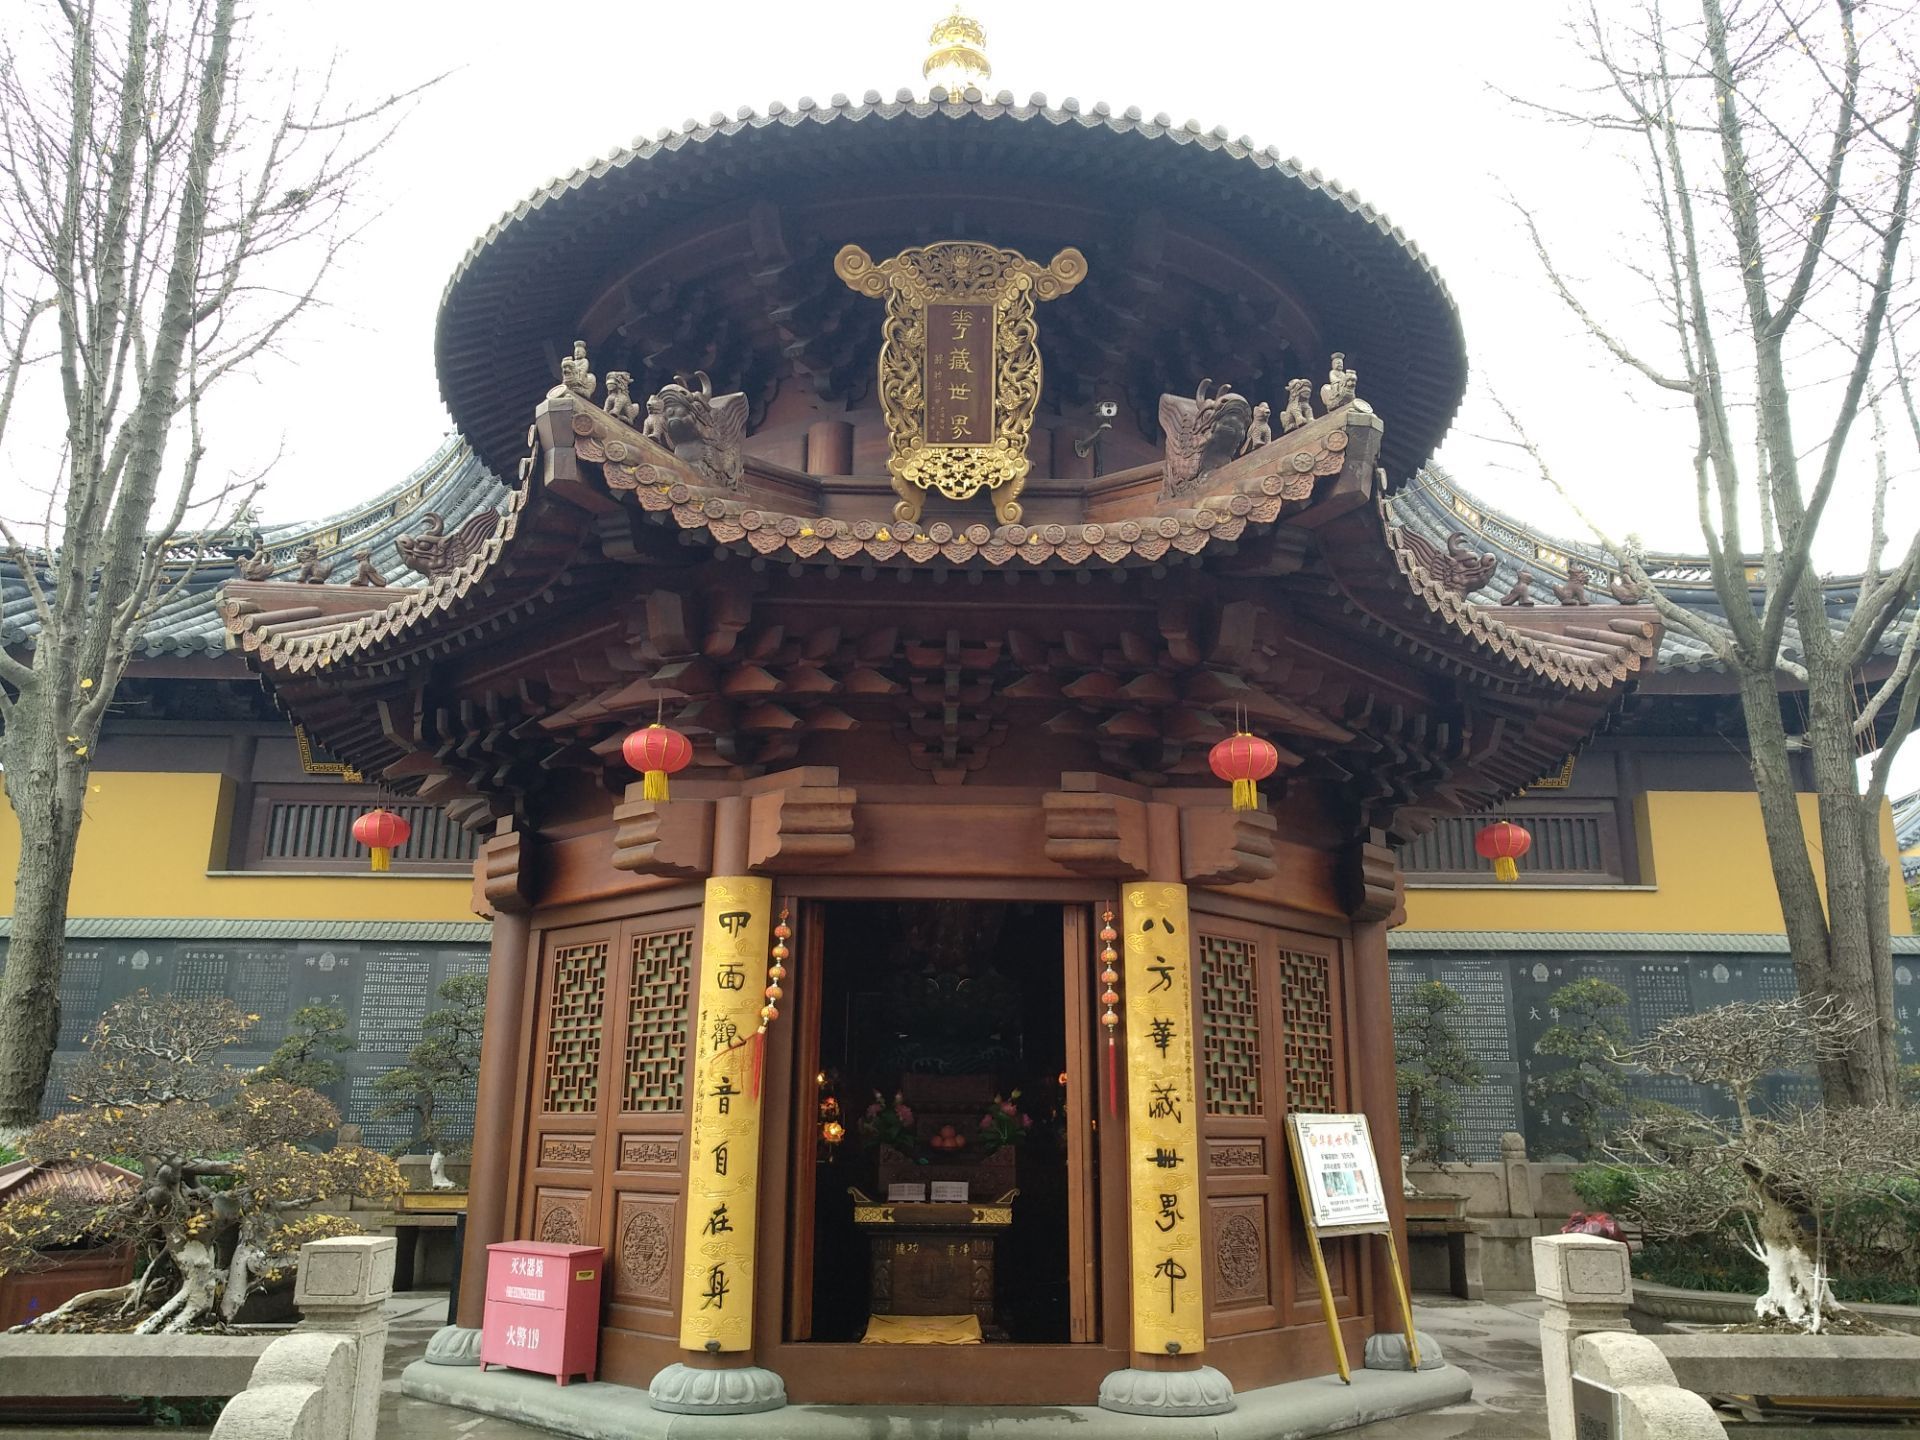 【携程攻略】上海西林禅寺景点,松江西林禅寺,始建于南宋咸淳年间